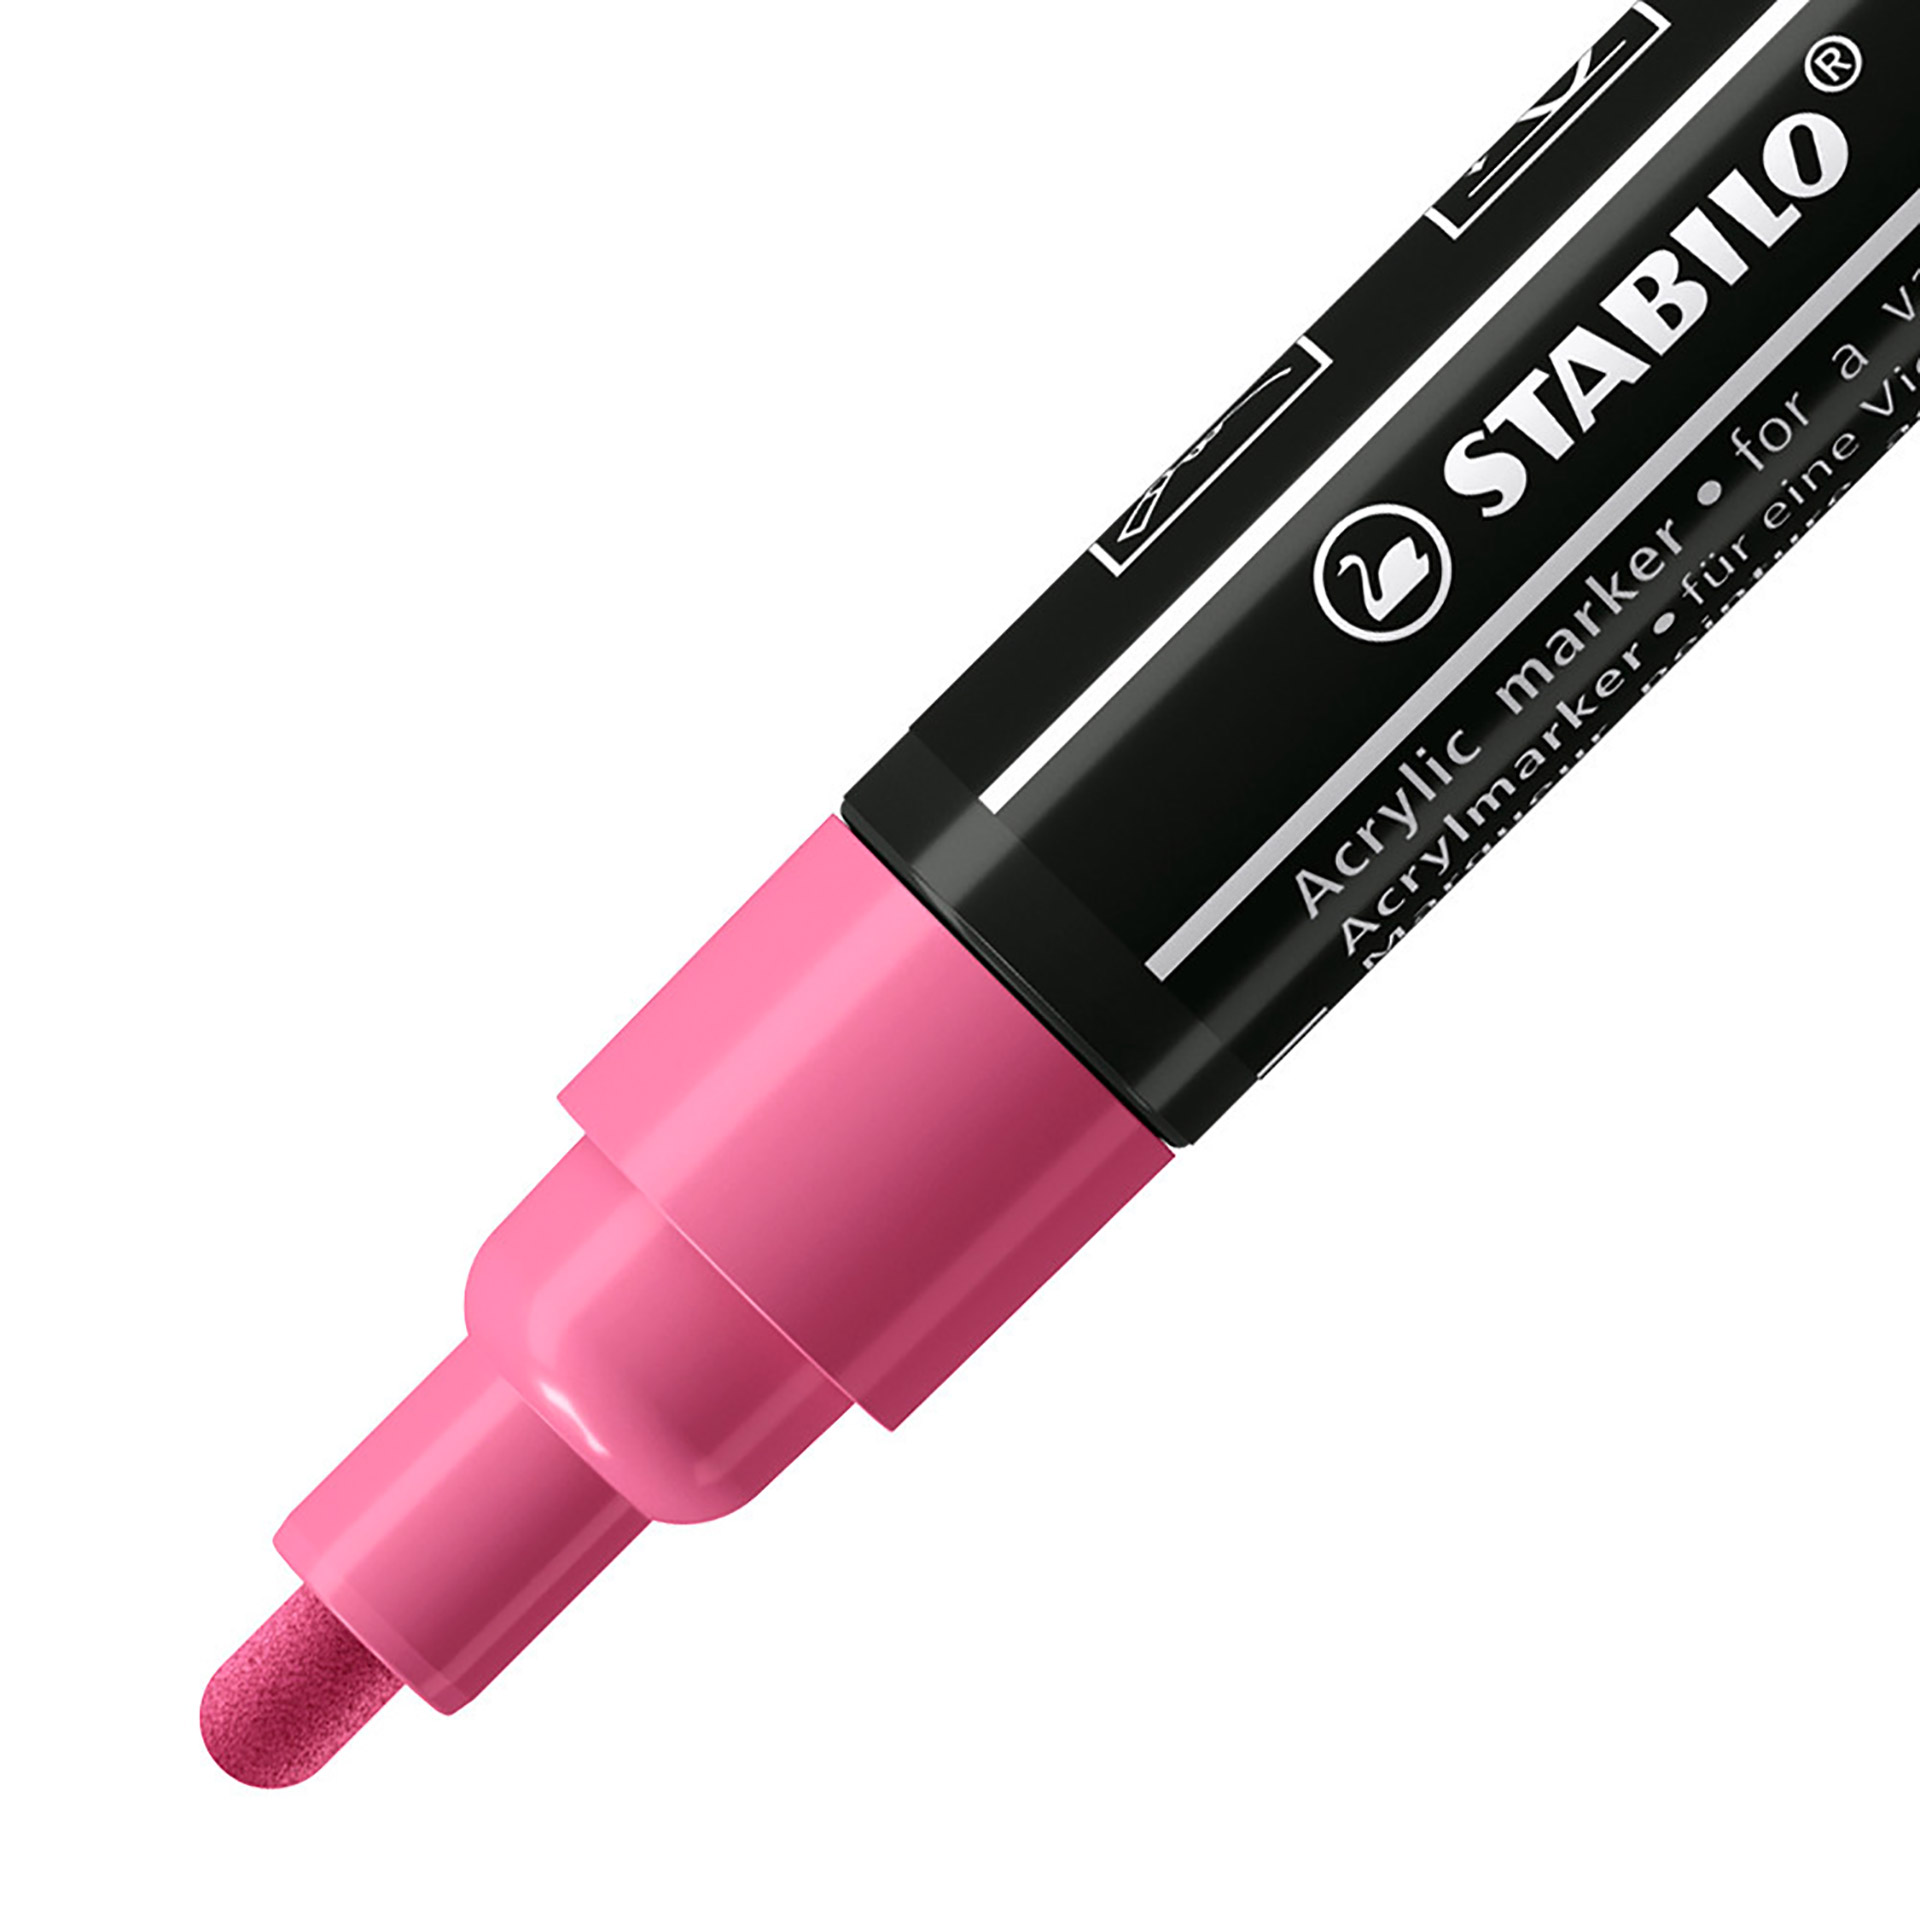 STABILO FREE Acrylic - T300 Punta rotonda 2-3mm - Confezione da 5 - Rosa, , large